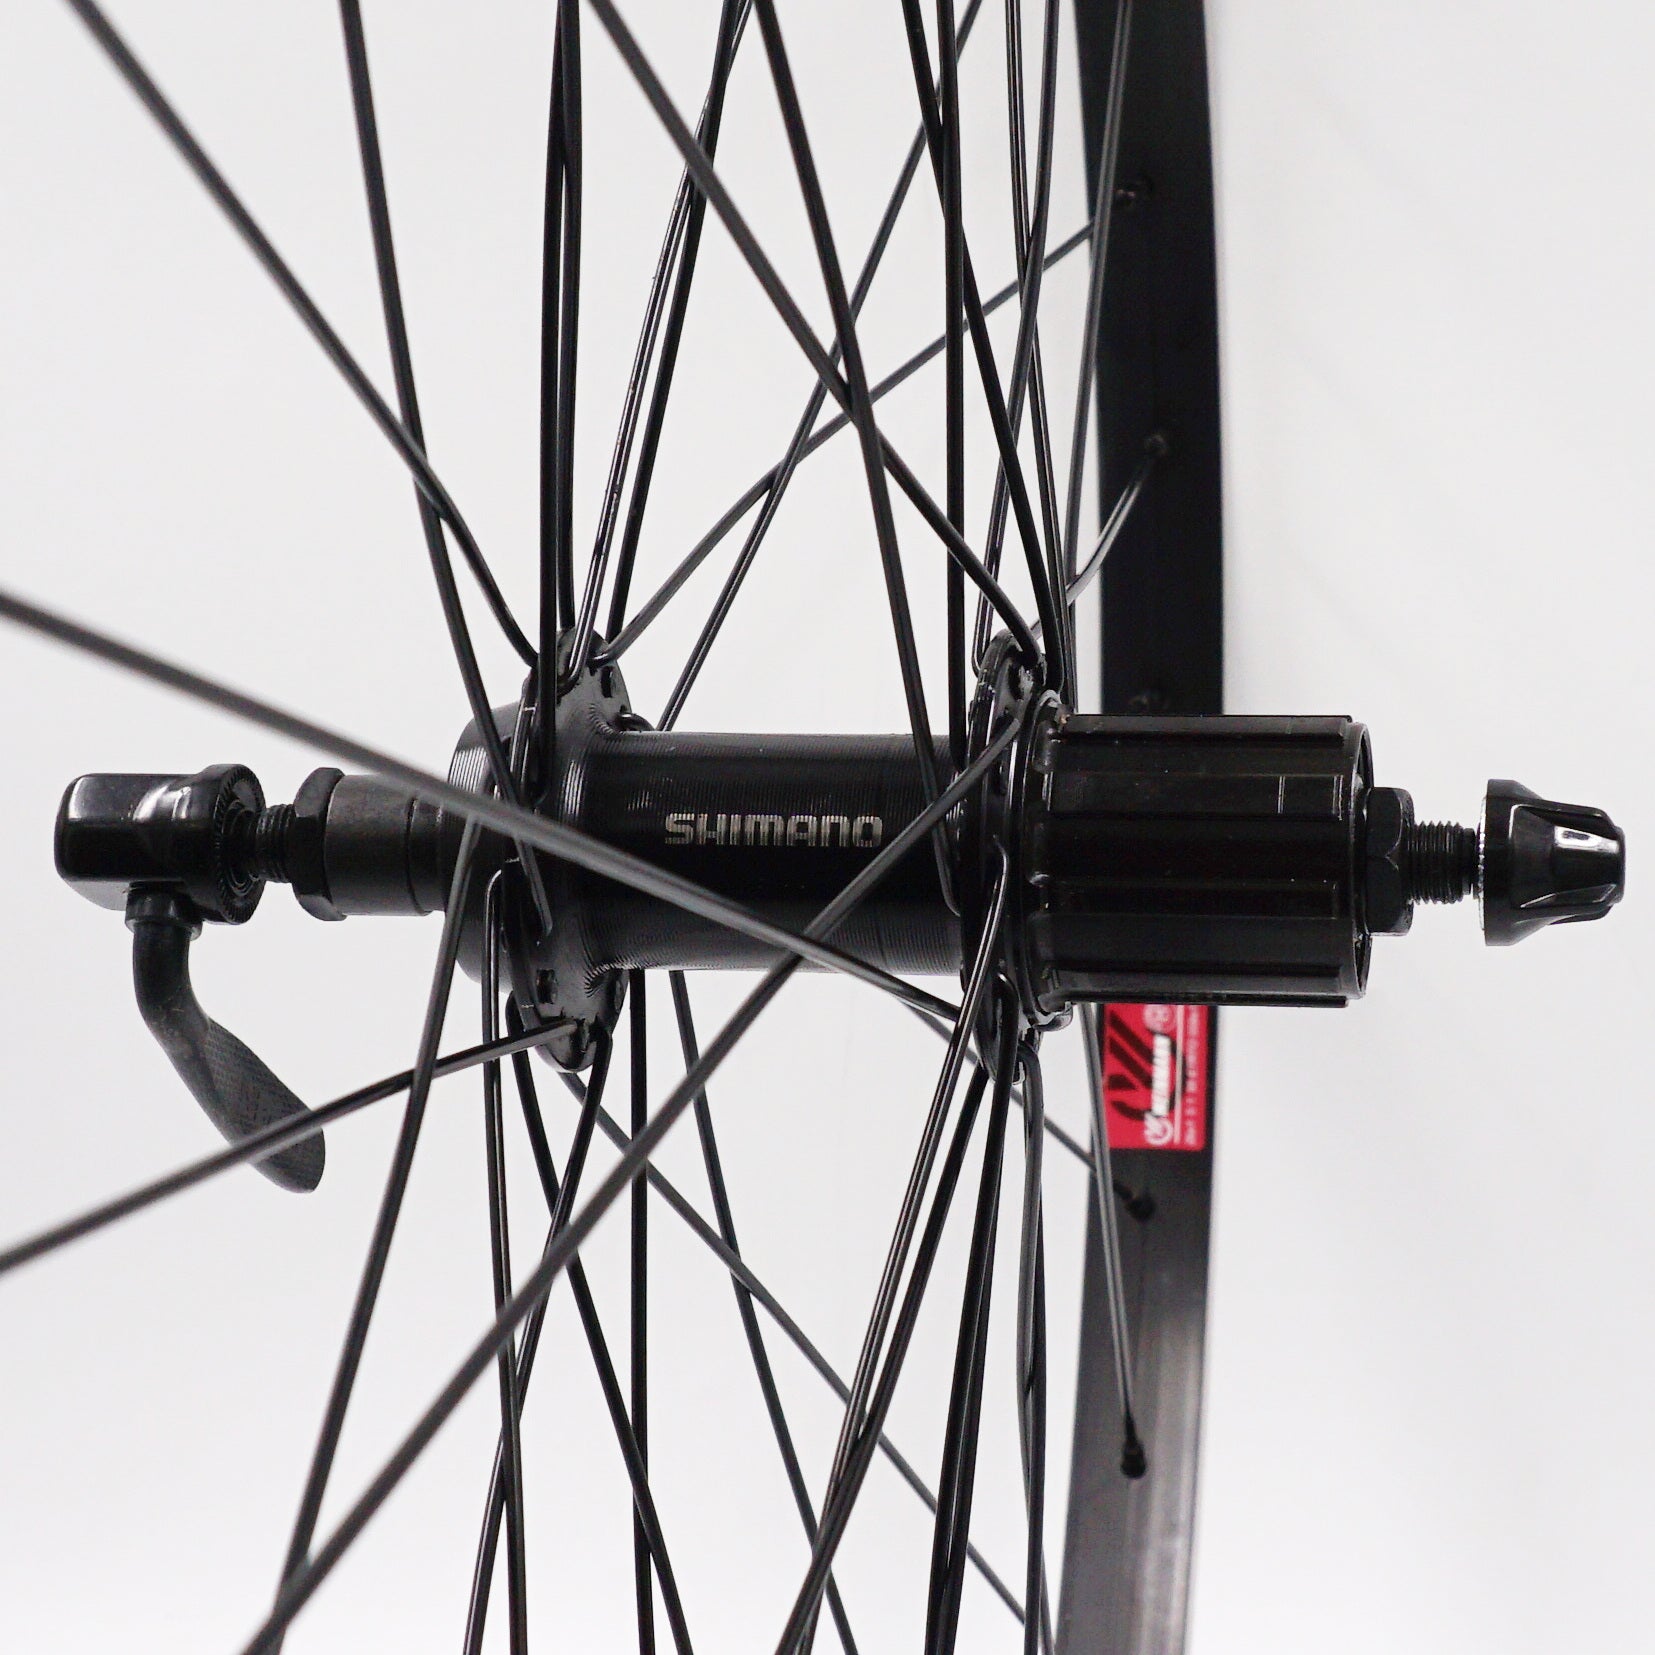 Weinmann 519 26-inch Black Cassette type Mountain Bike Wheelset